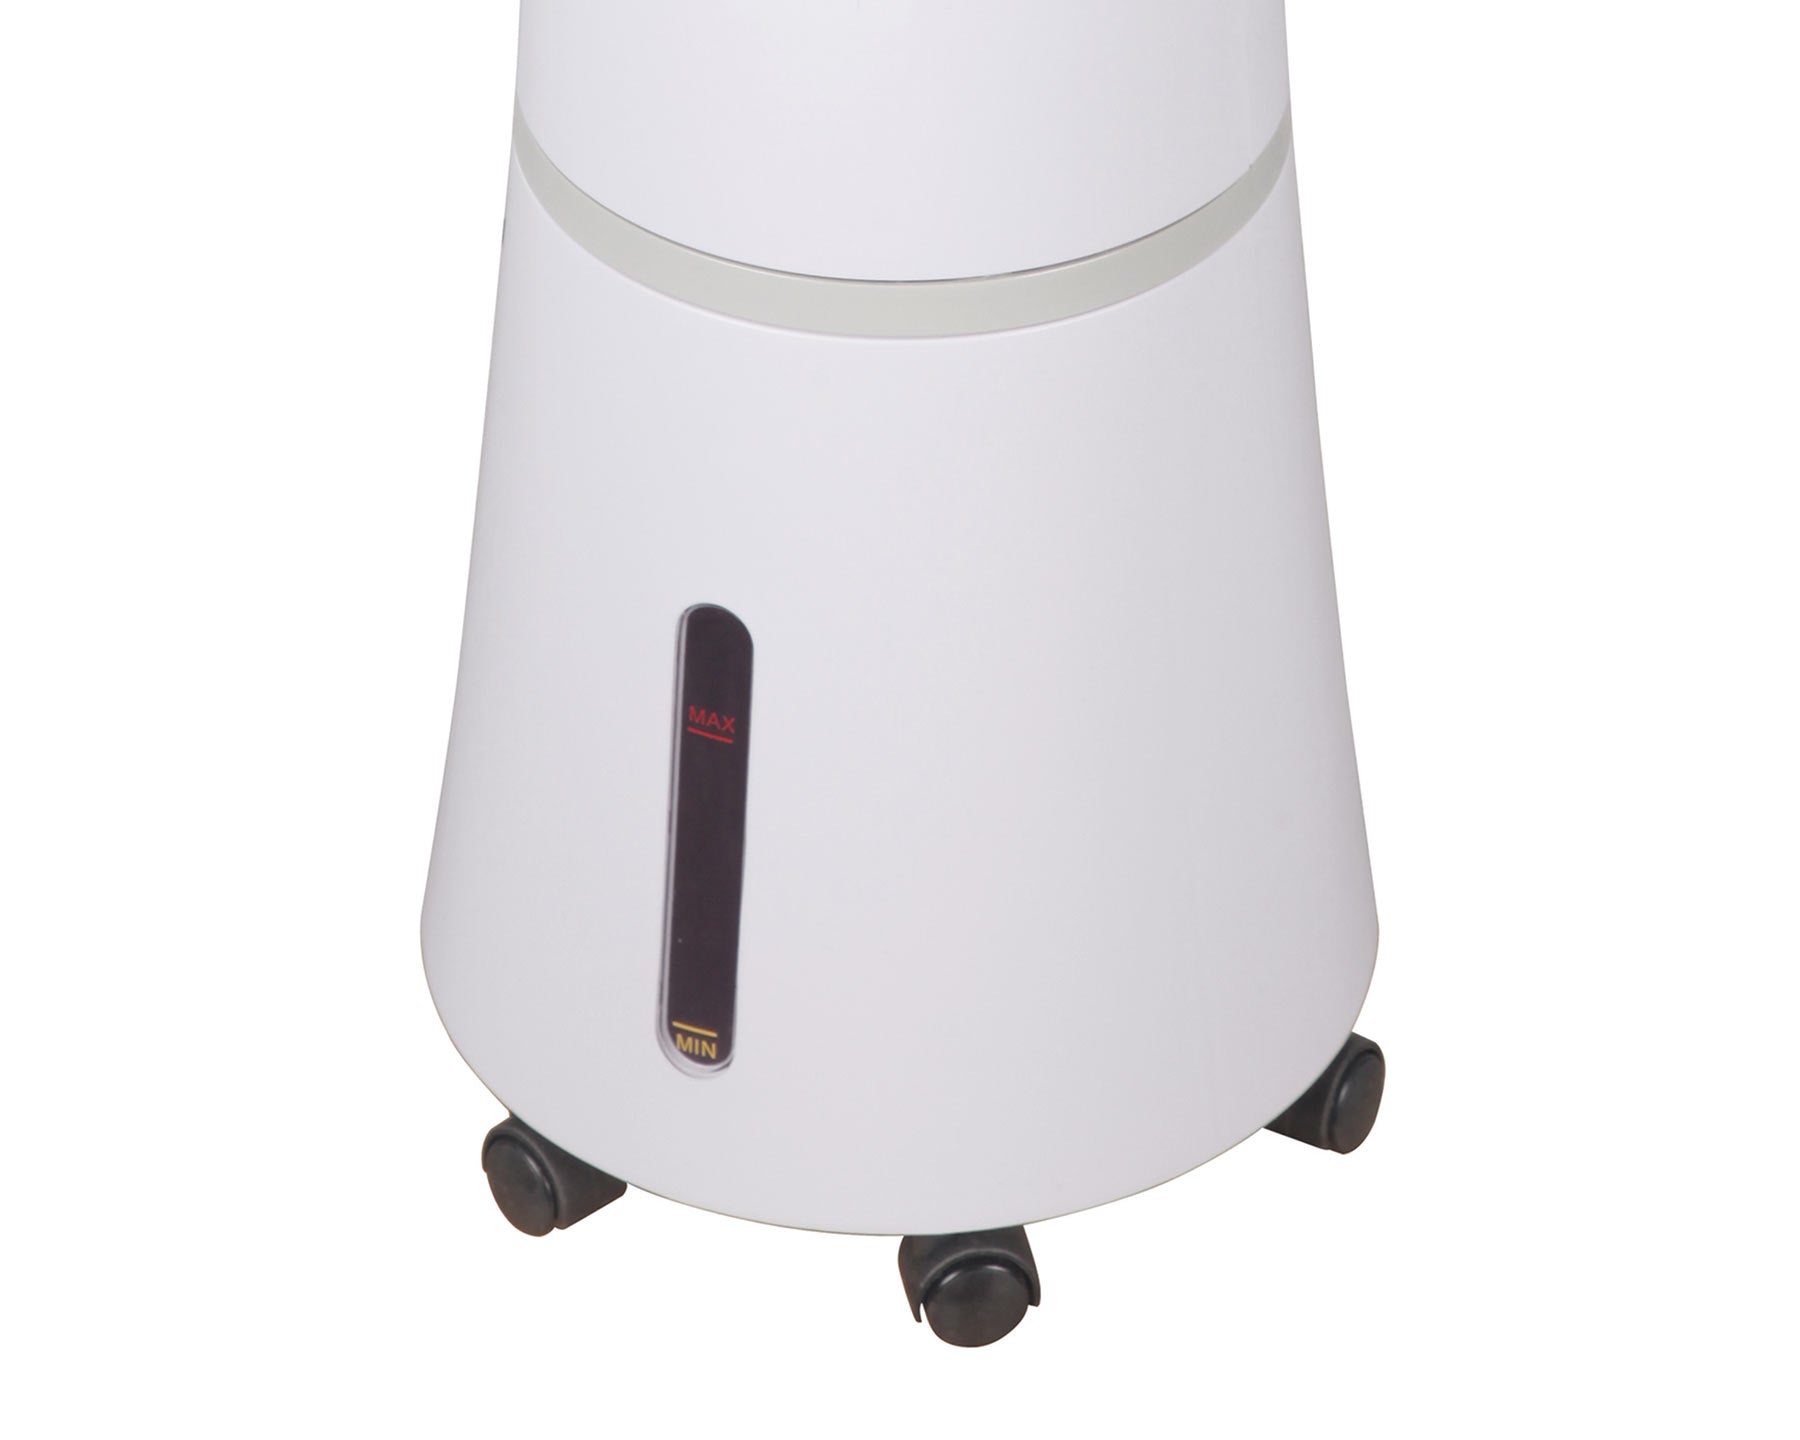 Stylies Turm Air Cooler Naru - kitchen-more.ch, kostenloser Versand in der ganzen Schweiz